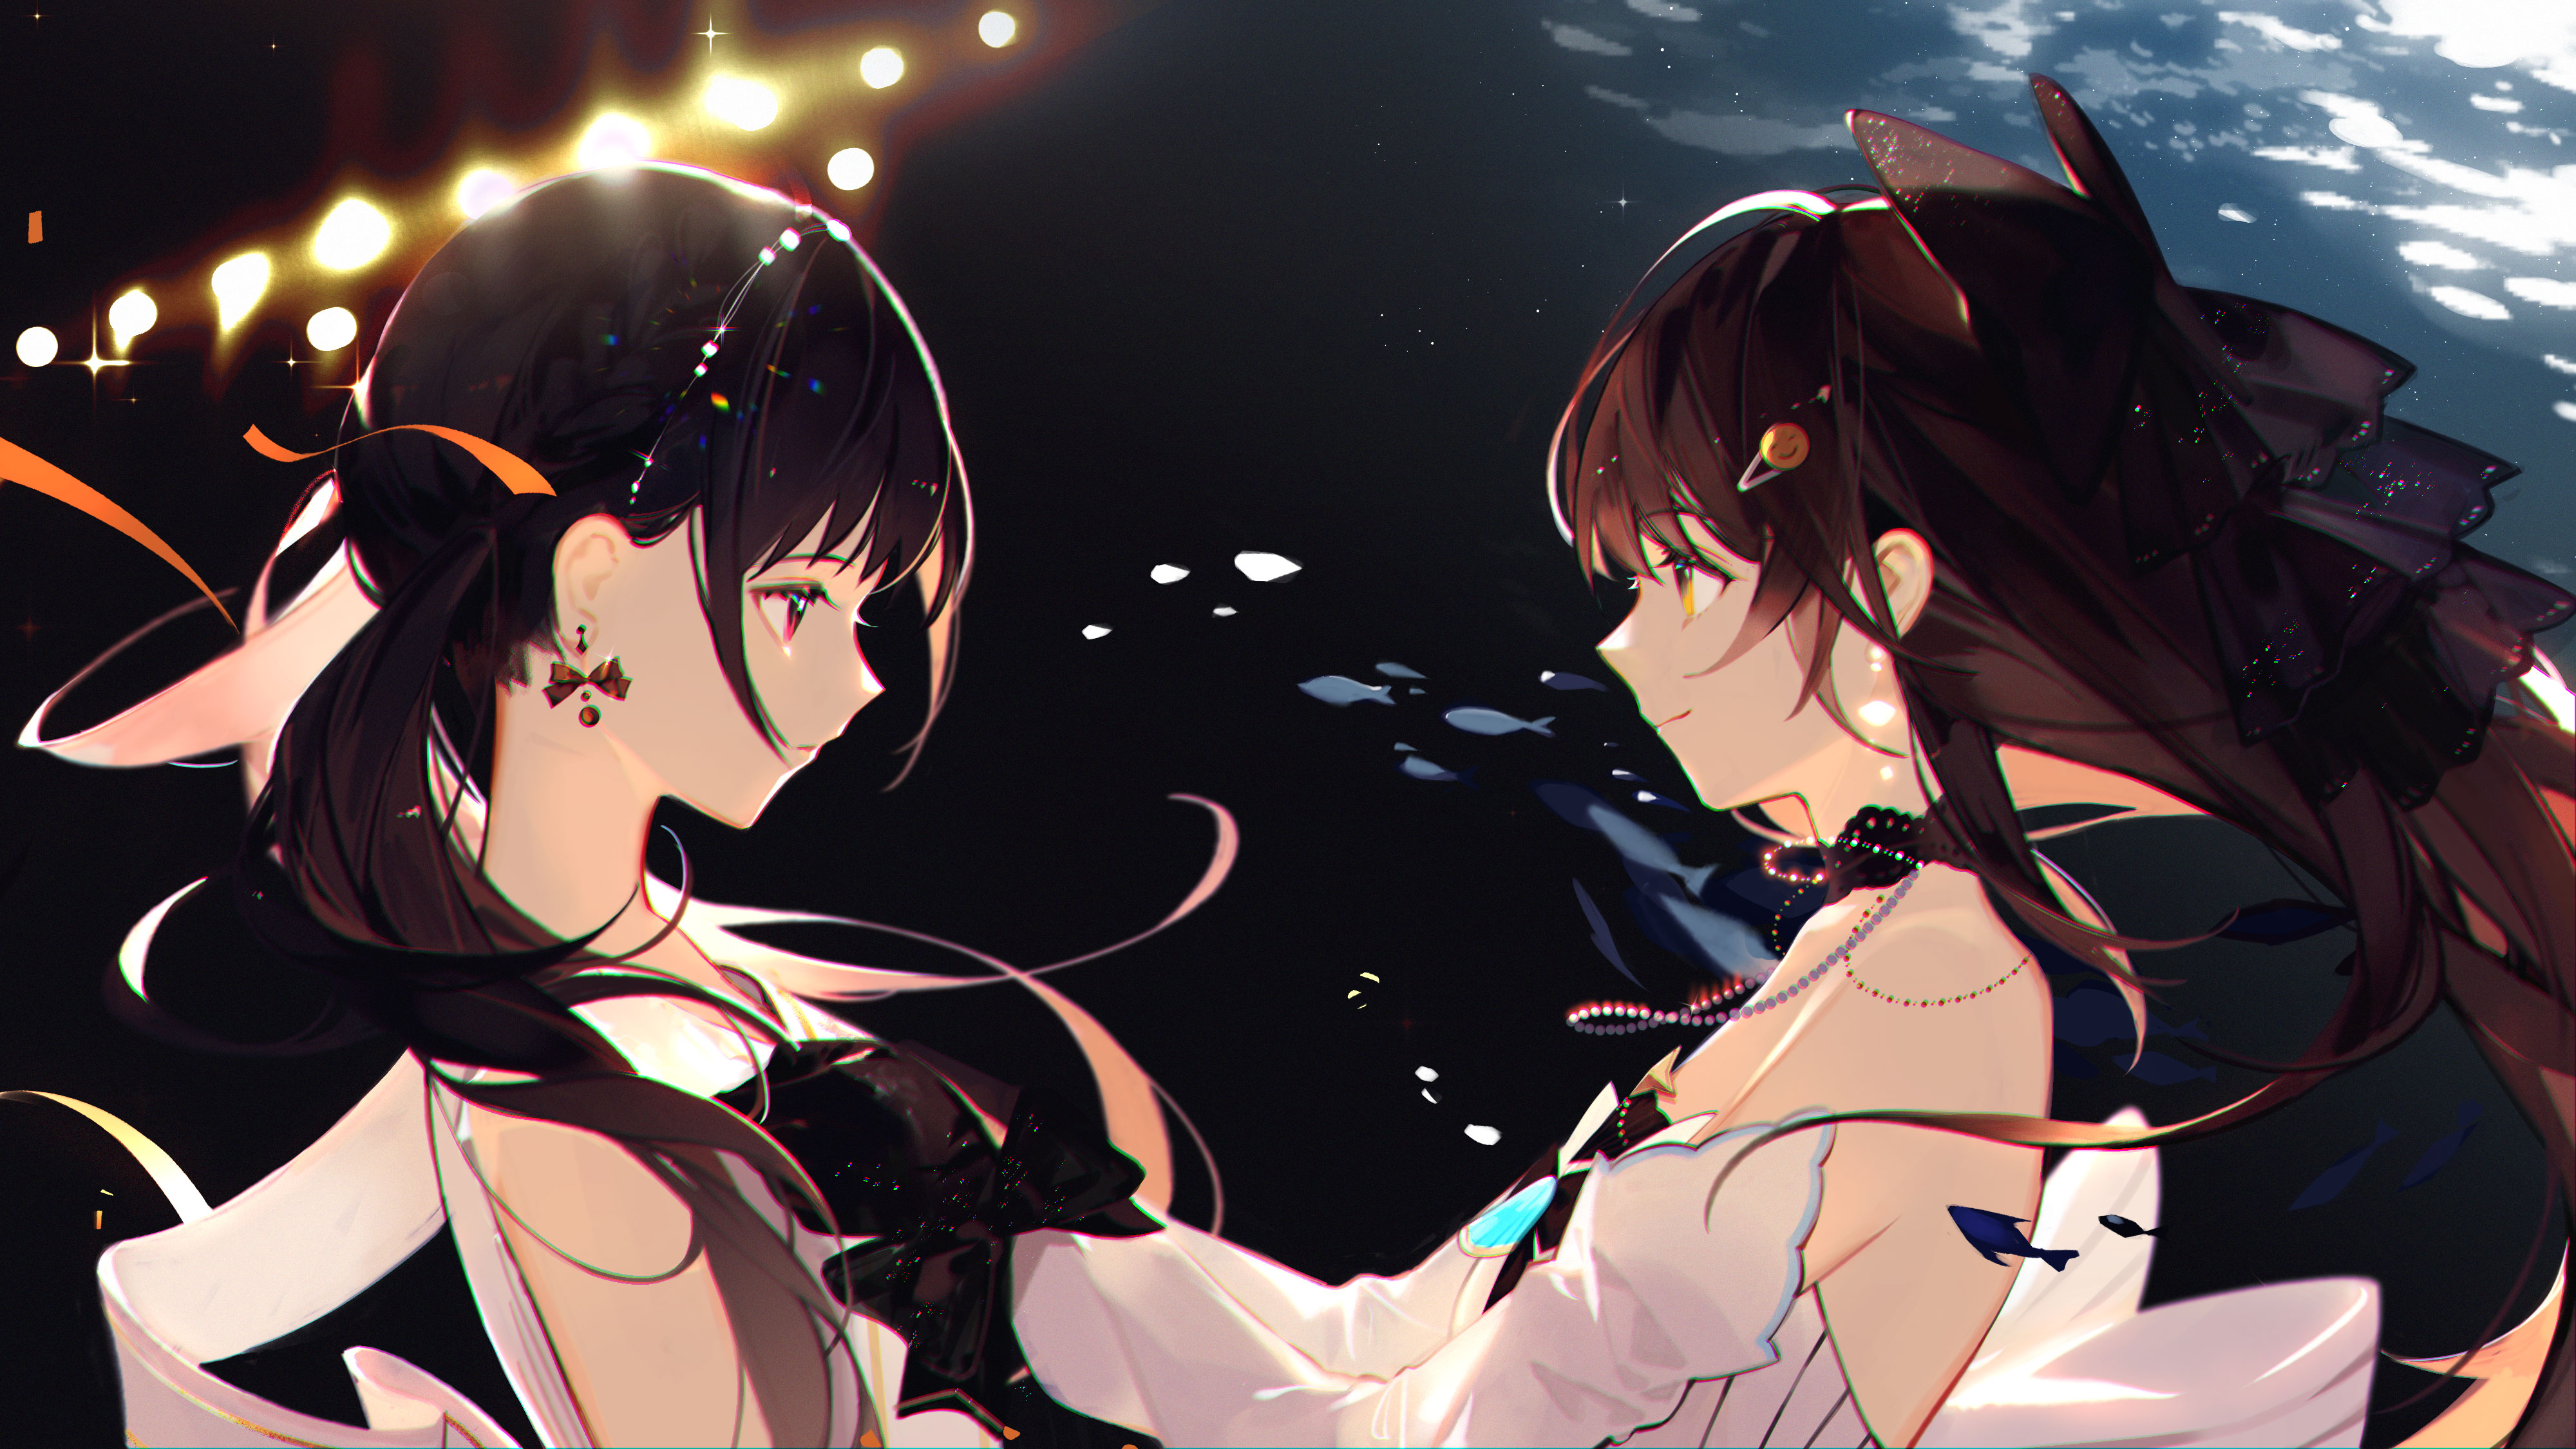 two women, anime, anime girls | 4000x2250 Wallpaper - wallhaven.cc